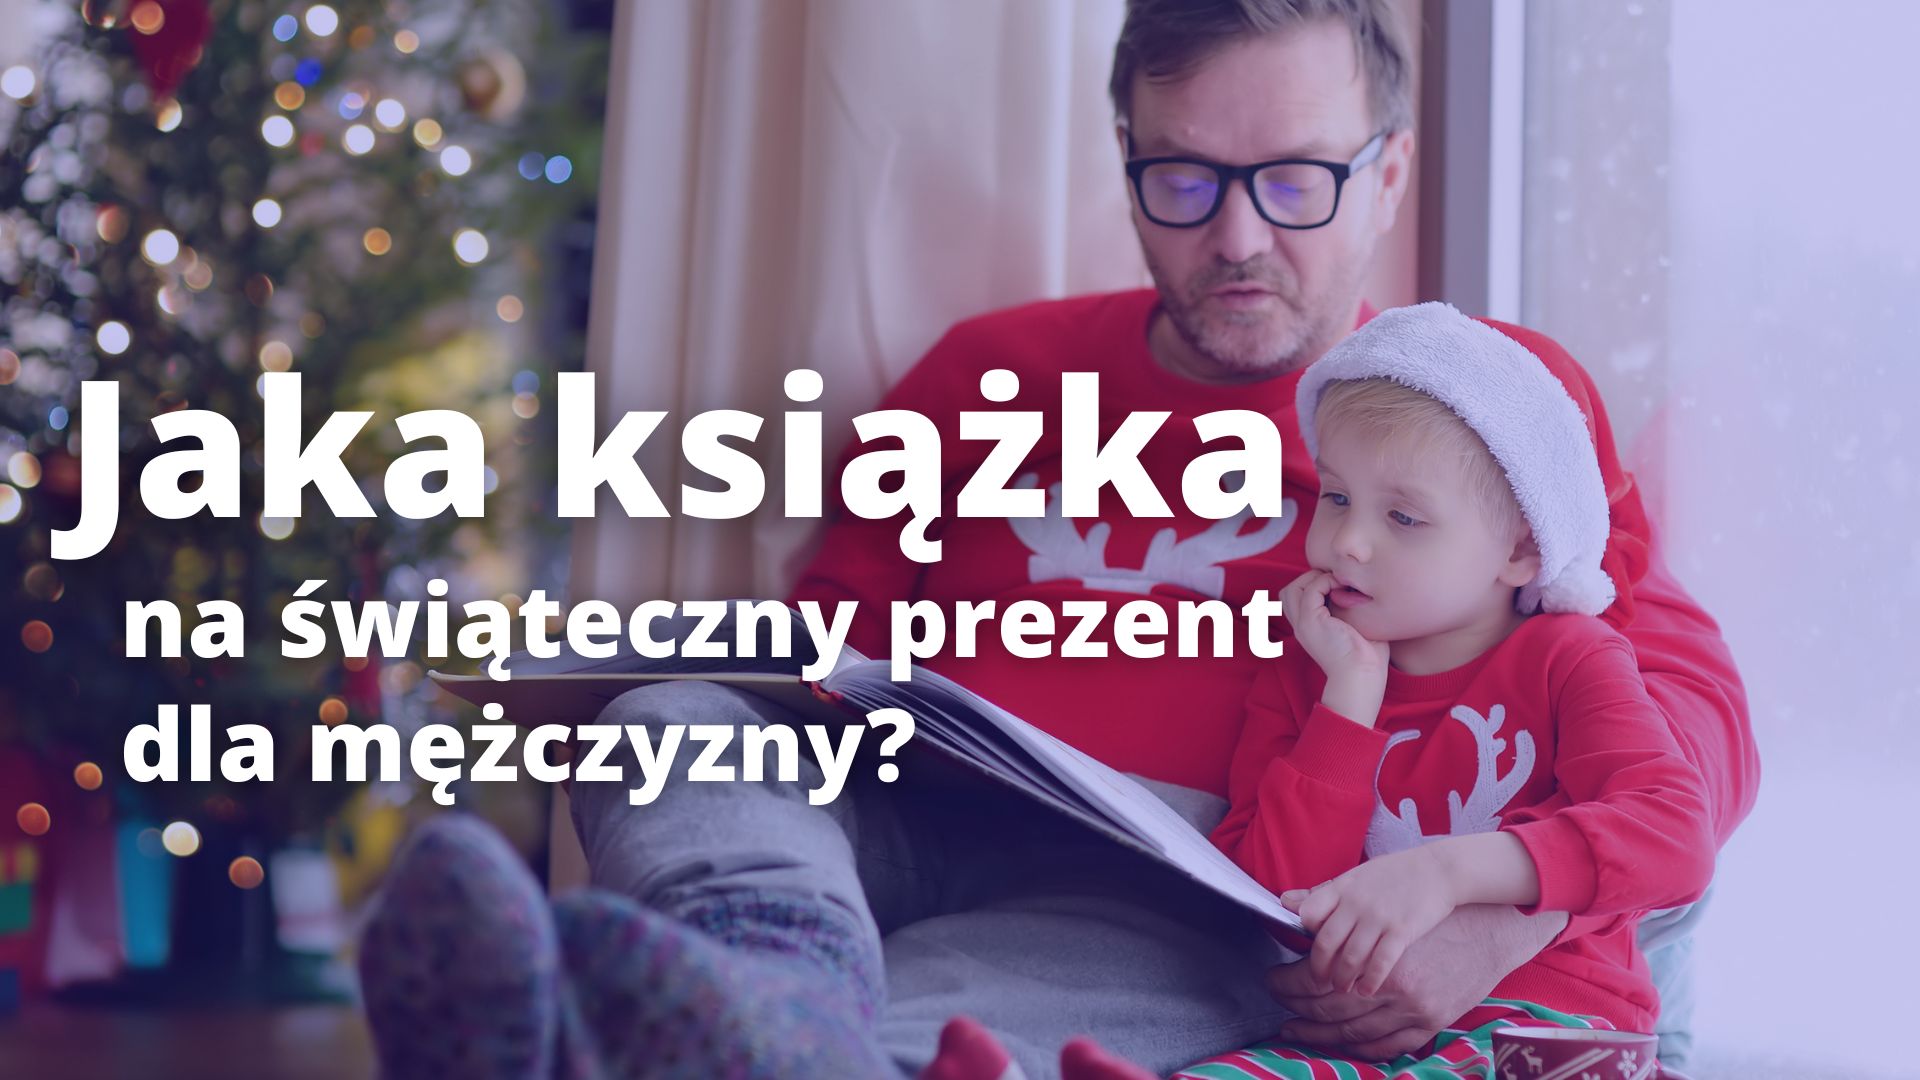 Read more about the article Jak książka dla mężczyzny na świąteczny prezent?